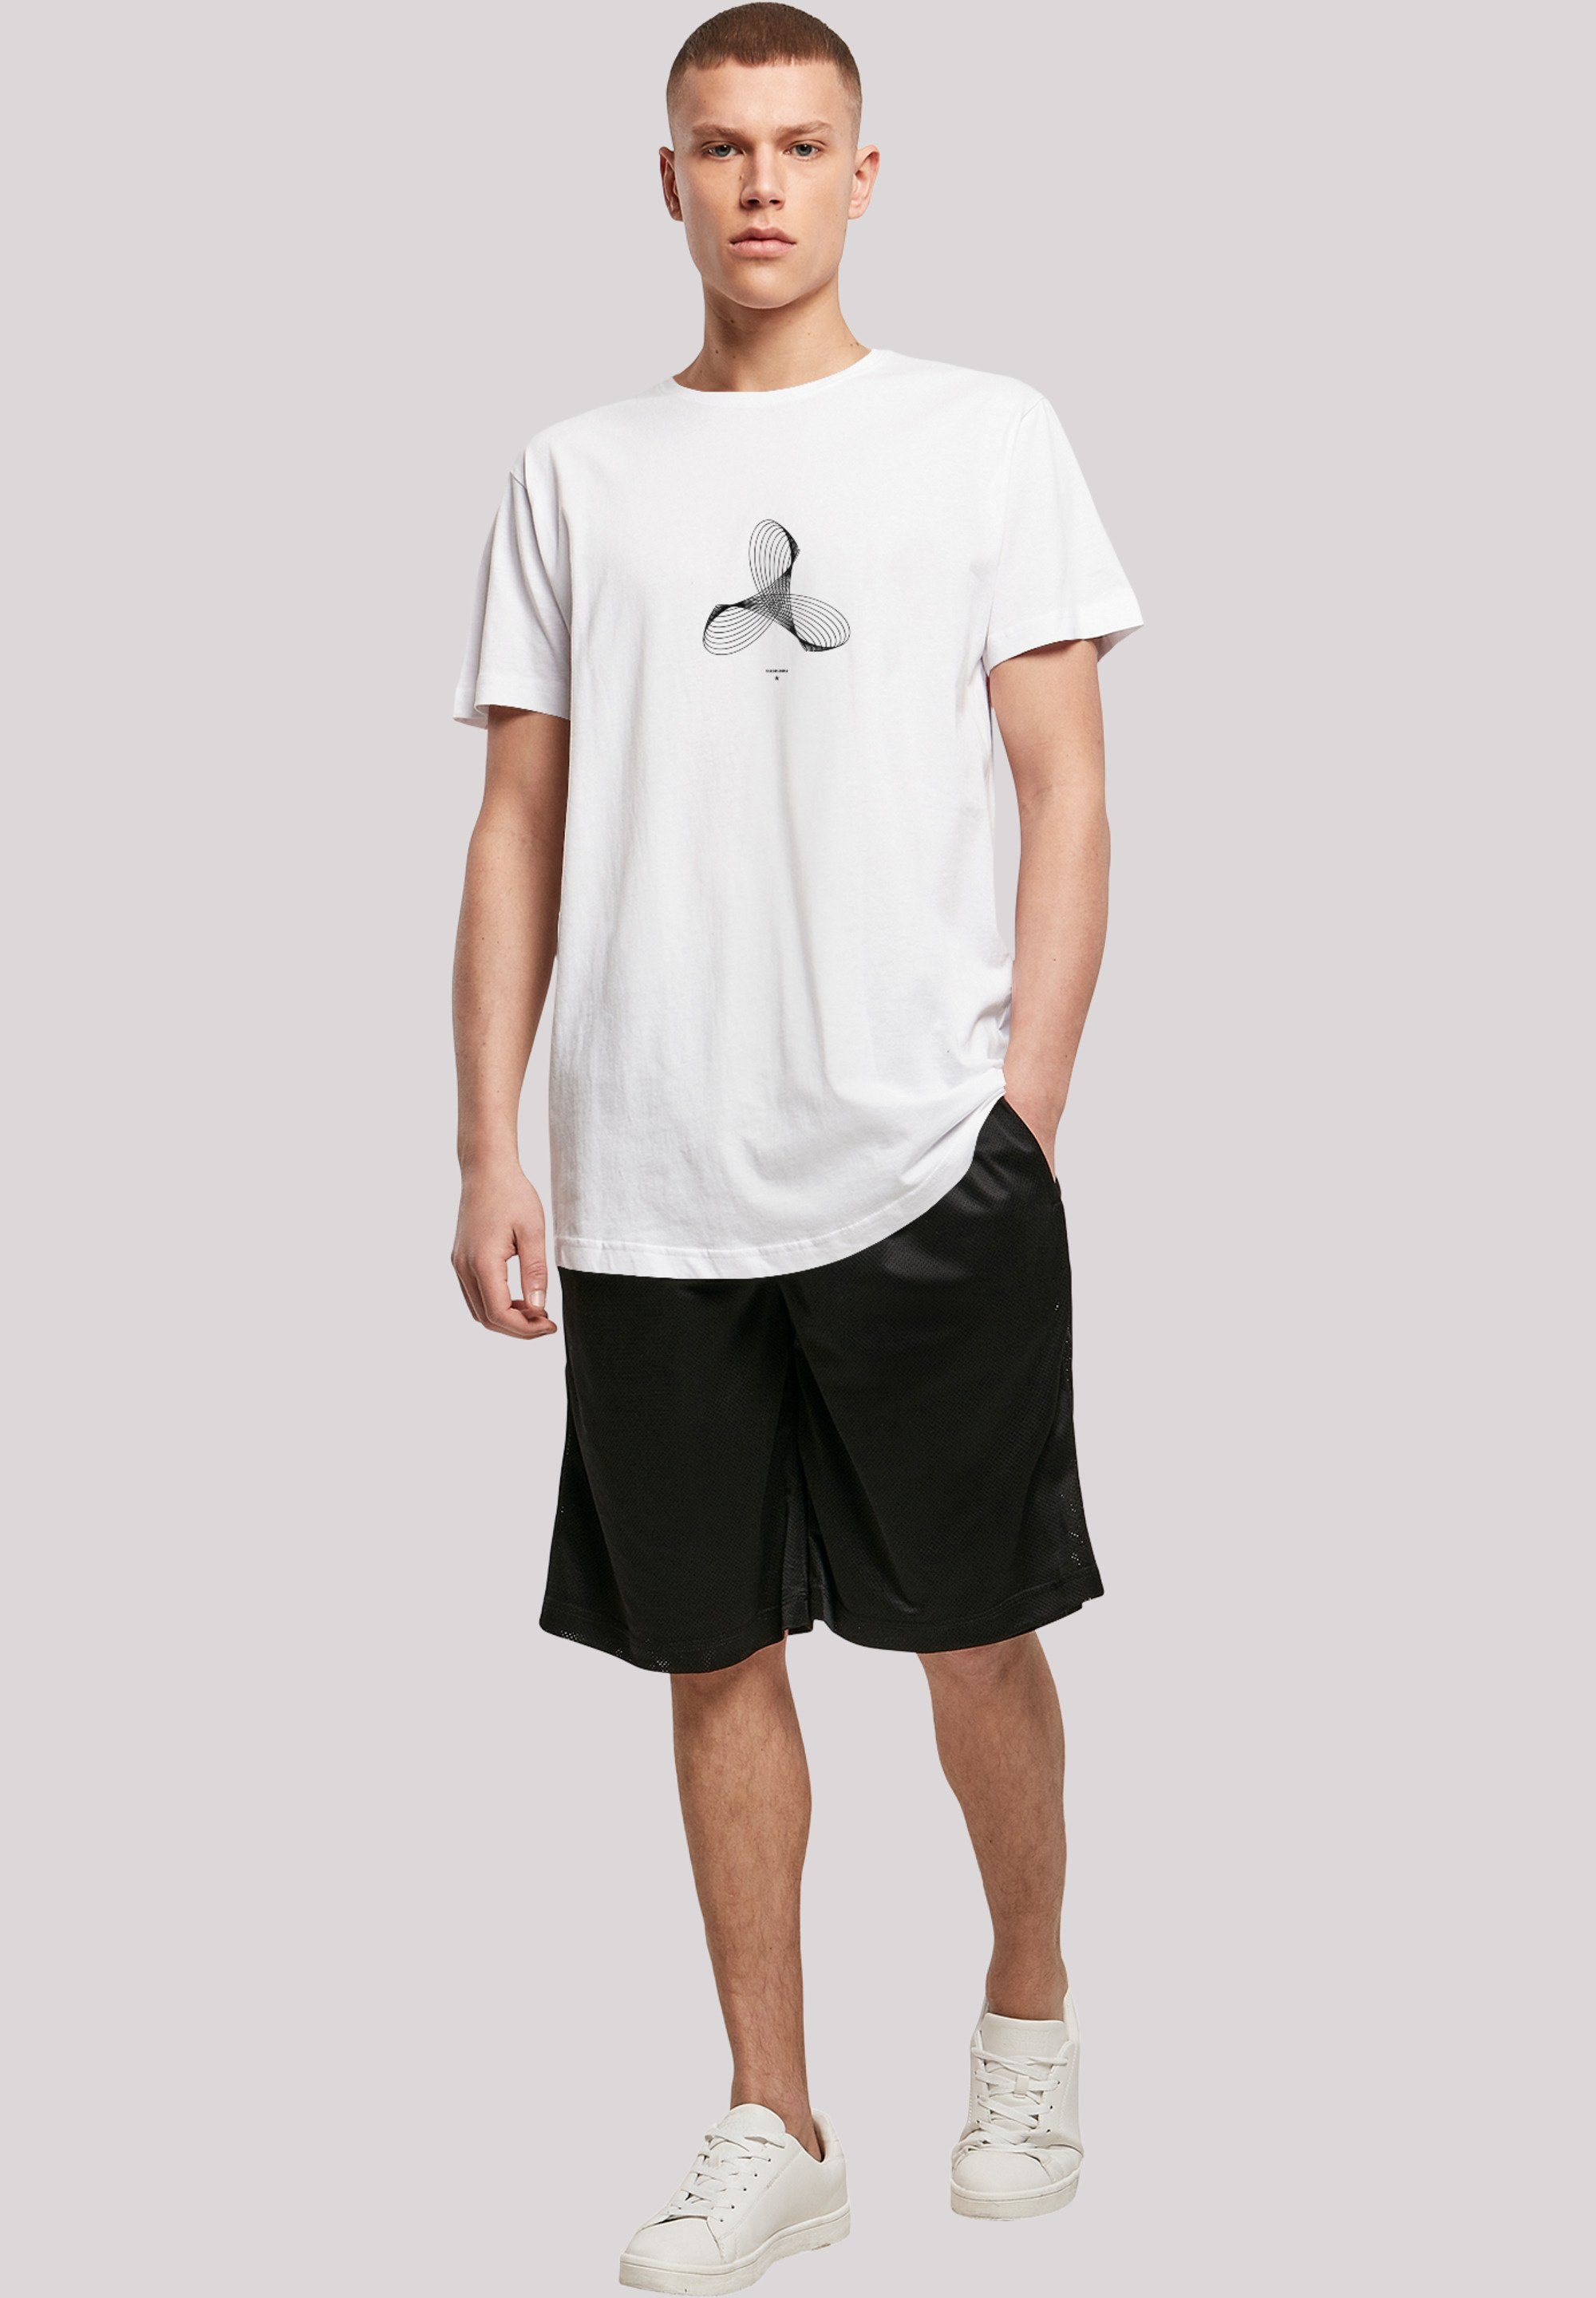 F4NT4STIC T-Shirt weiß Geometrics Print